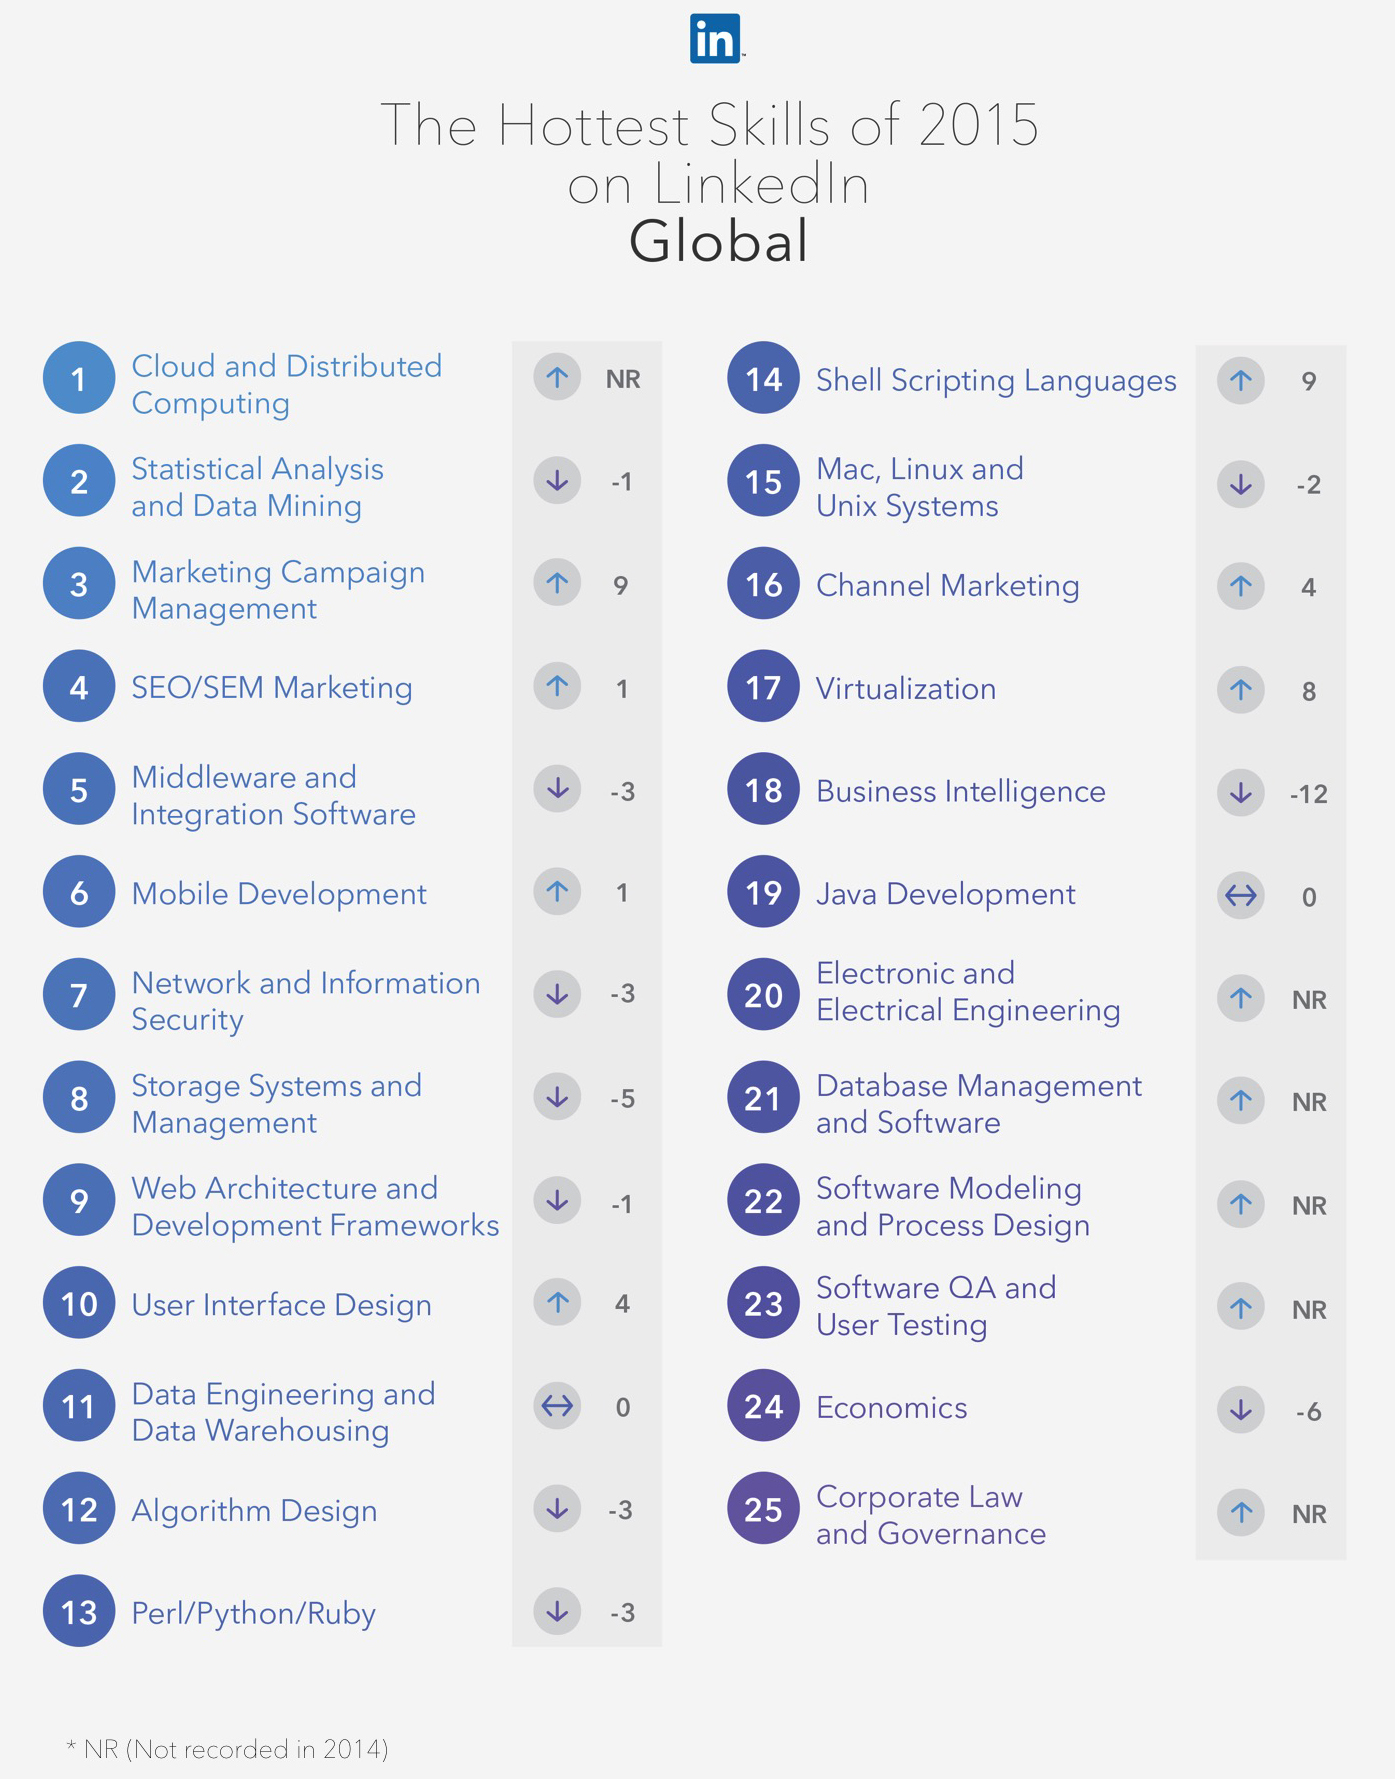 De 25 beste vaardigheden op LinkedIn van 2015